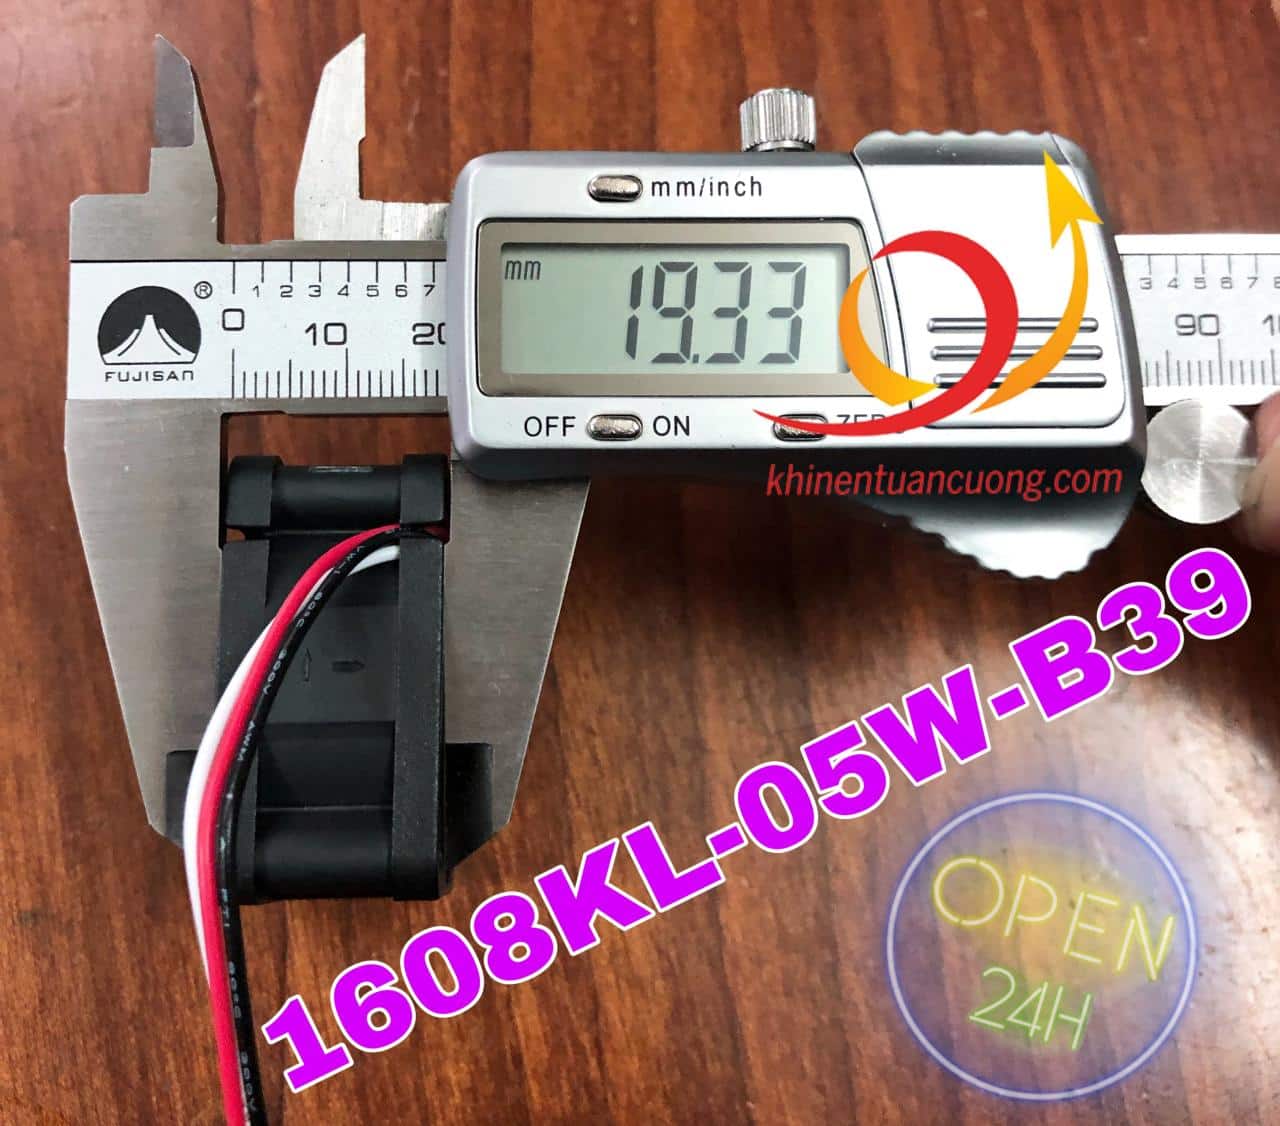 Quạt1608KL-05W-B39 0.07A được gọi là quạt mini cũng bởi chỉ dầy có 2cm tương đương 20mm